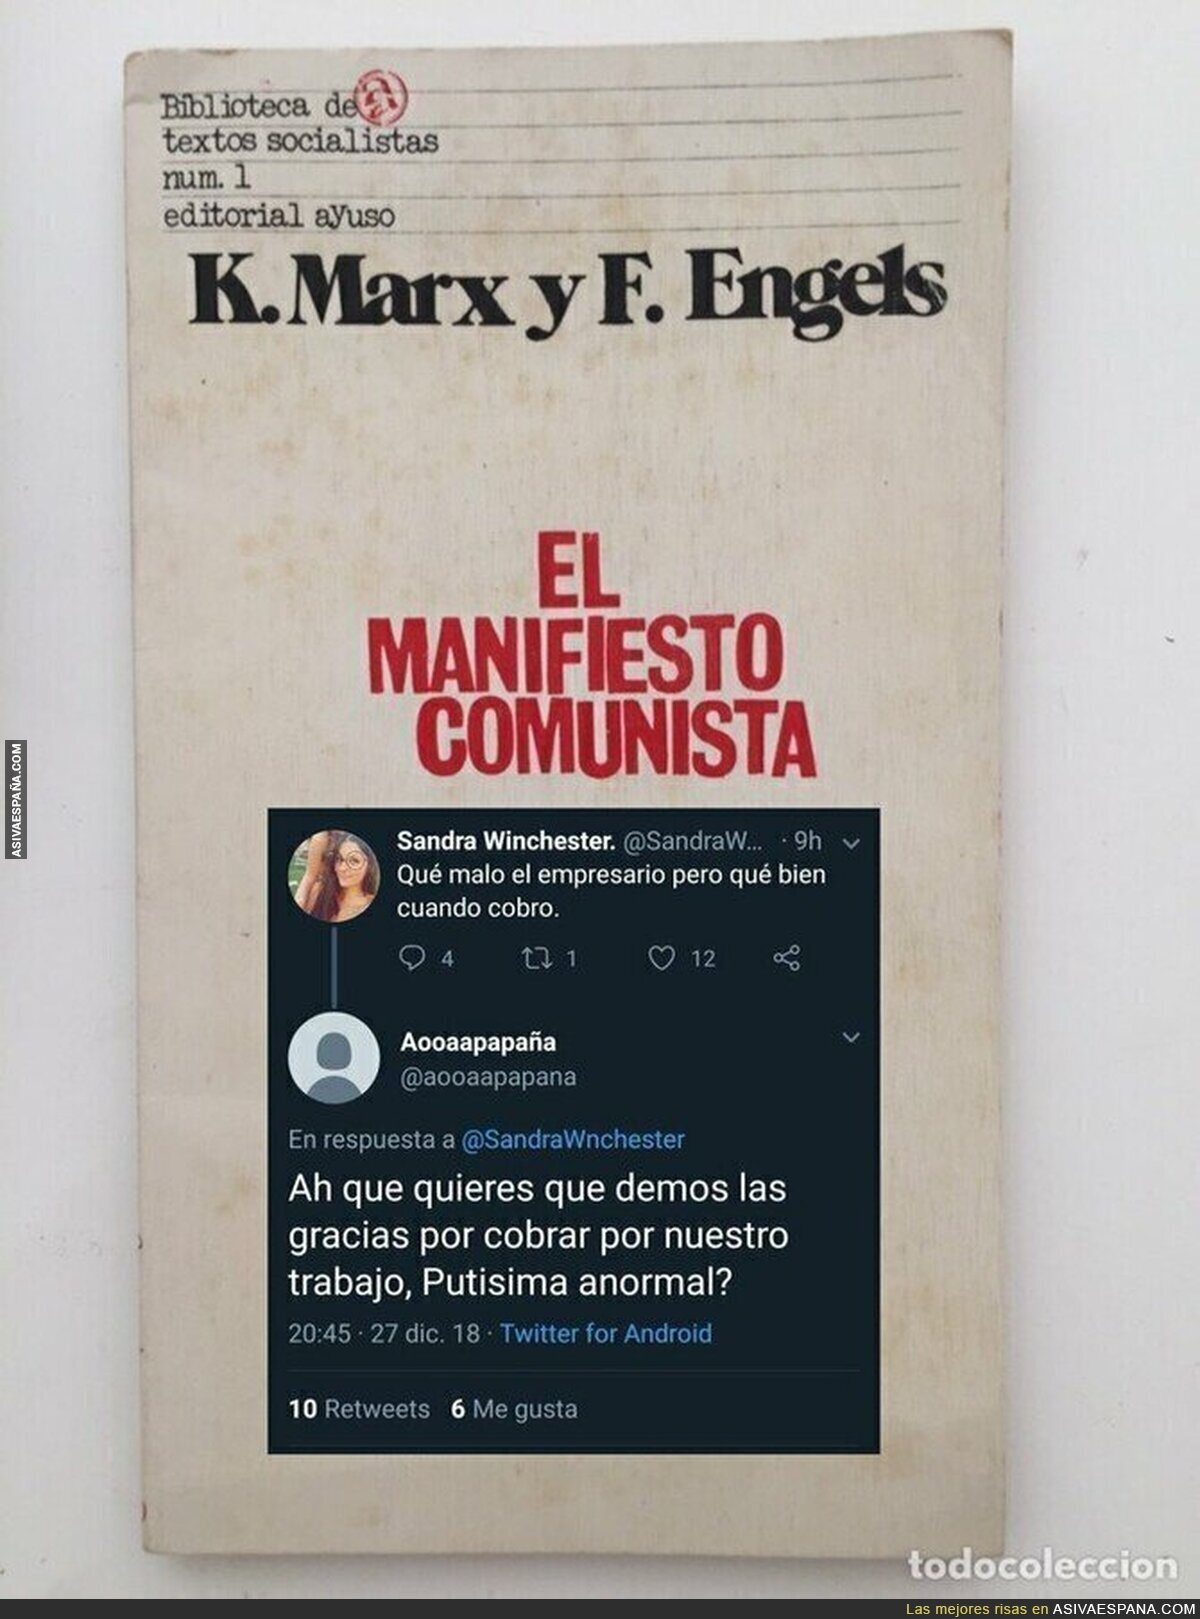 Nueva portada de El Manifiesto Comunista